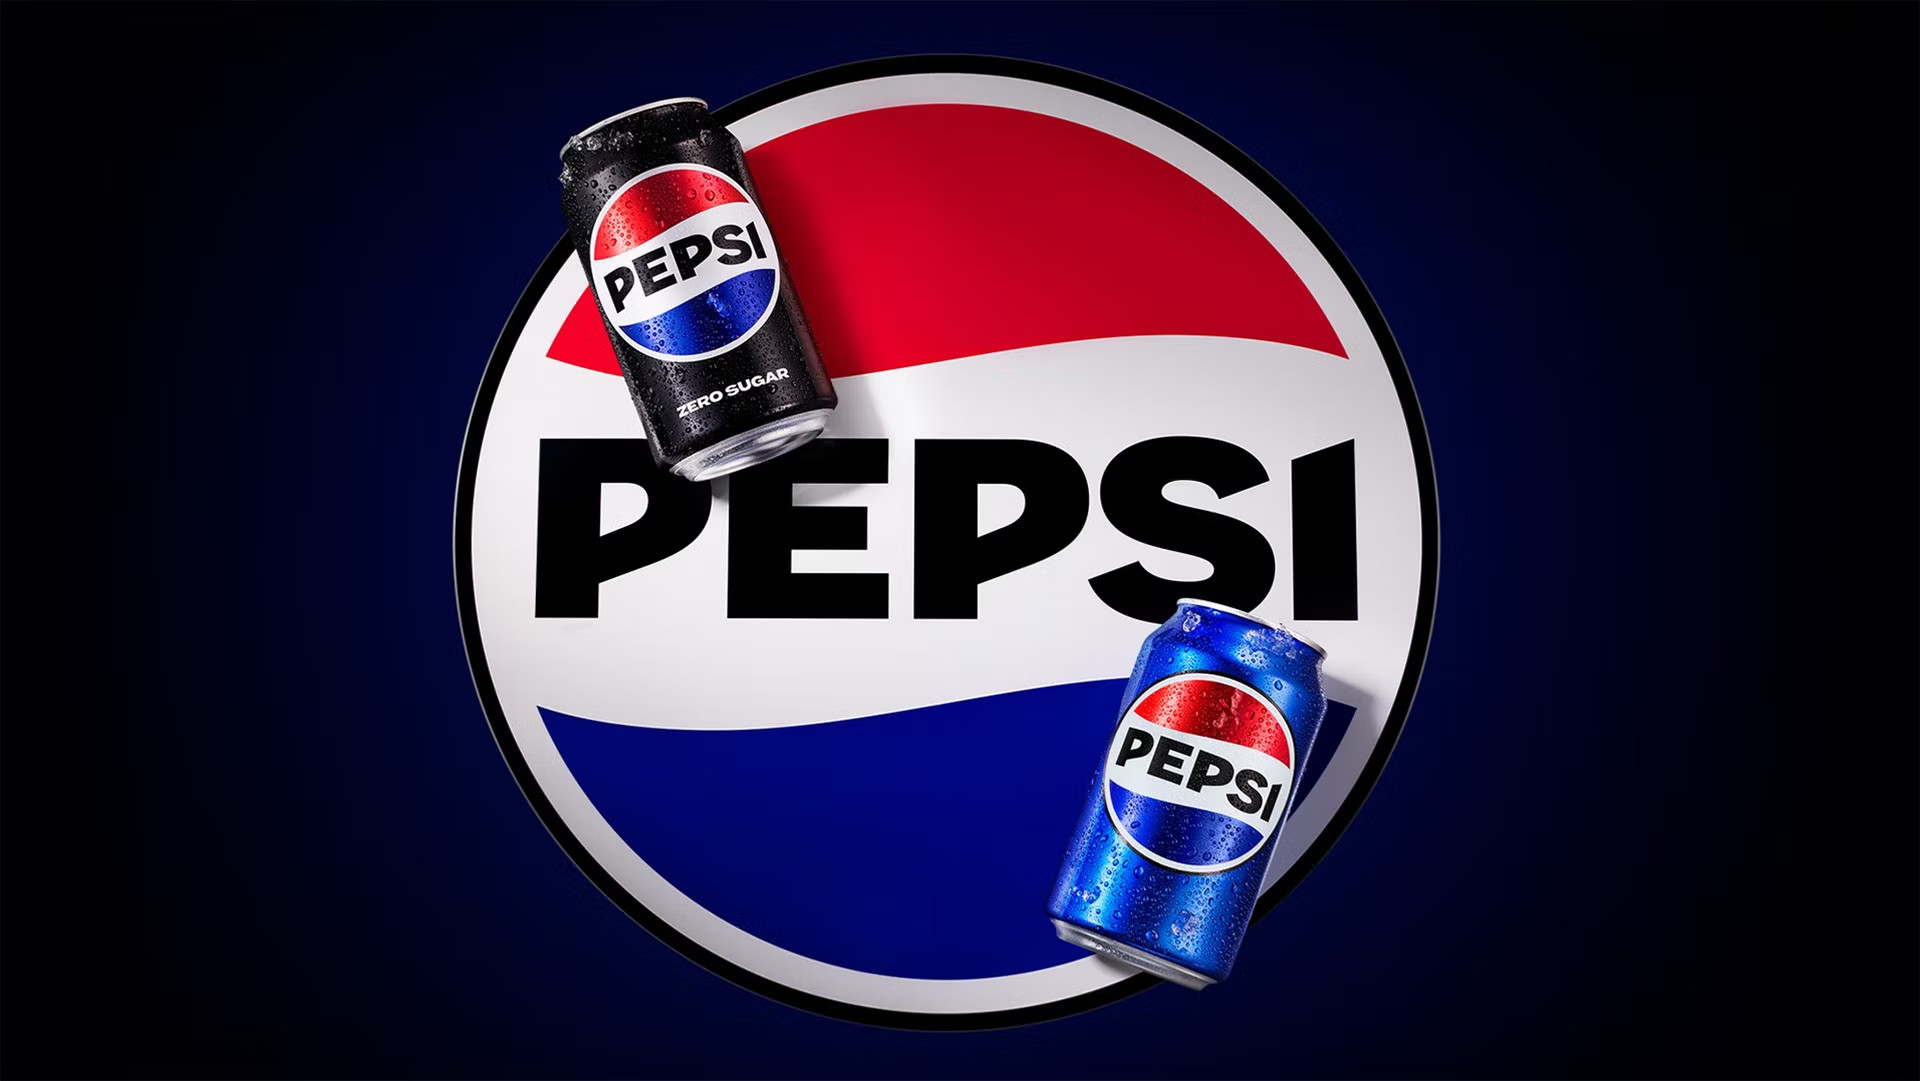 Pepsi new logo